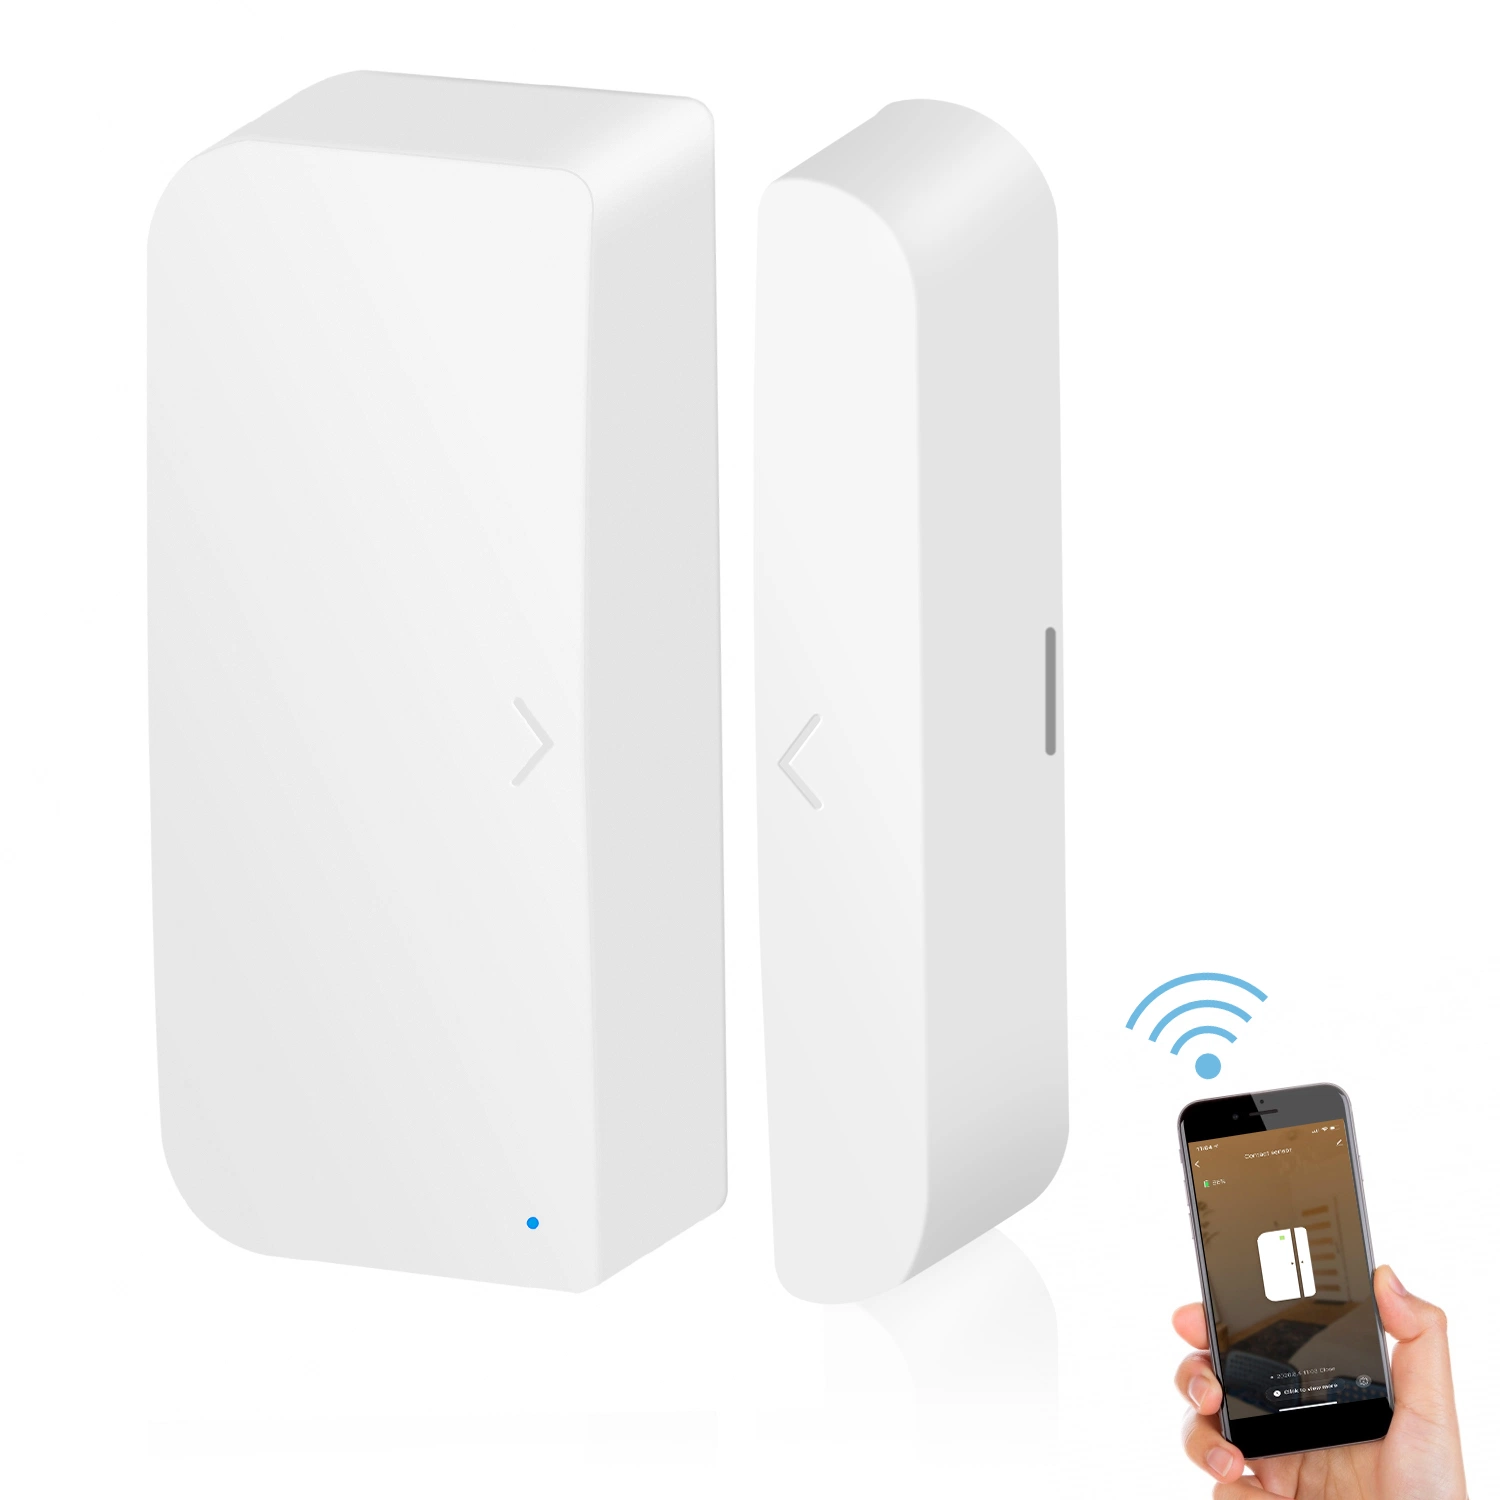 مستشعر/تلامس الباب المغناطيسي اللاسلكي للتحكم عن بُعد في الحياة الذكية للمنازل Minco Home Smart Life Remote Control بالنسبة إلى نظام الإنذار المنزلي، مستشعر الباب المنزلق التلقائي Tuya Smart WiFi